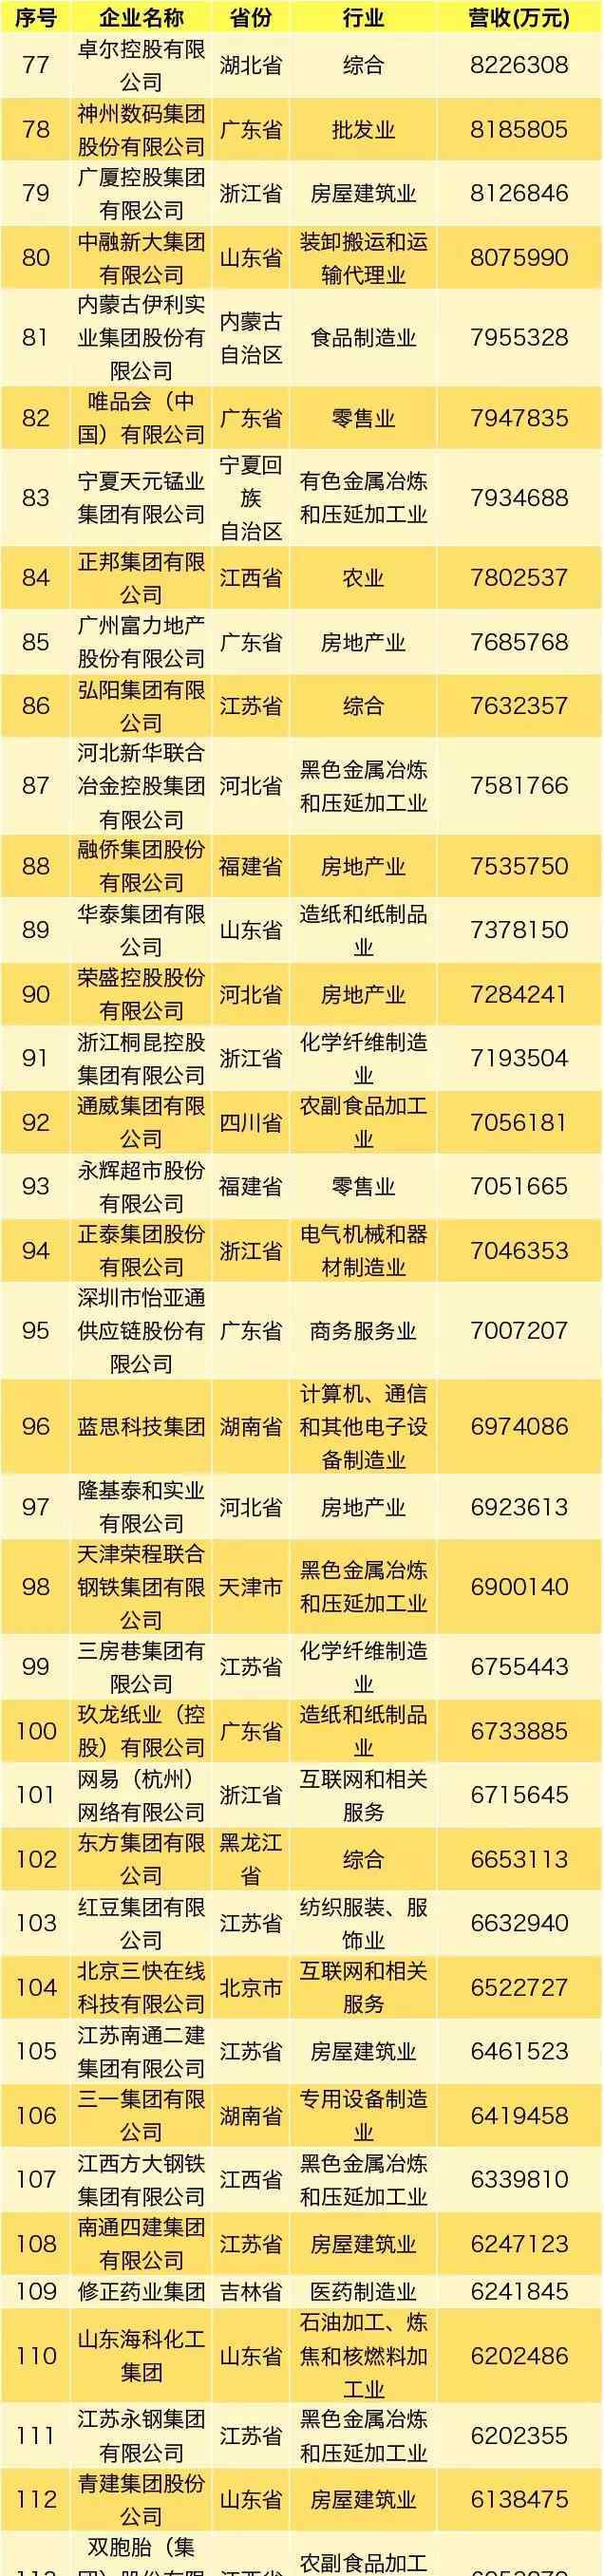 500强企业名单 2019中国民营企业500强榜单出炉，永辉位列第93位